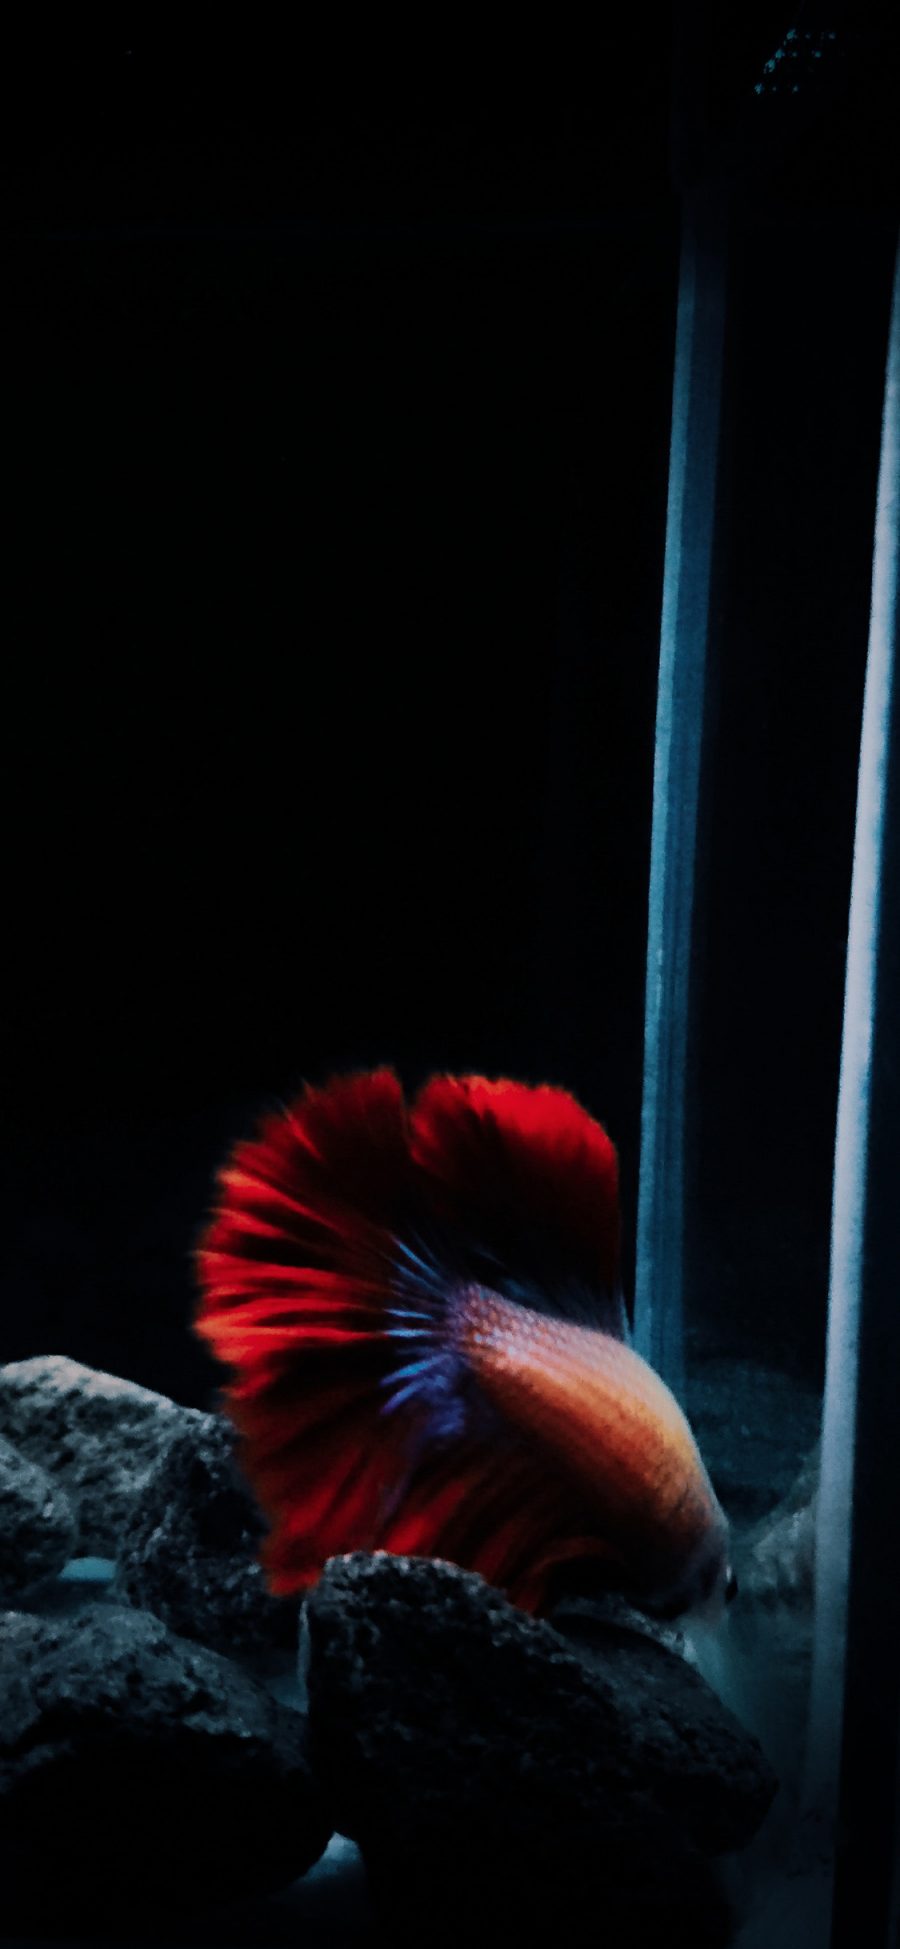 [2436×1125]鱼缸 石头 观赏鱼 斗鱼 红色 漂亮 苹果手机壁纸图片